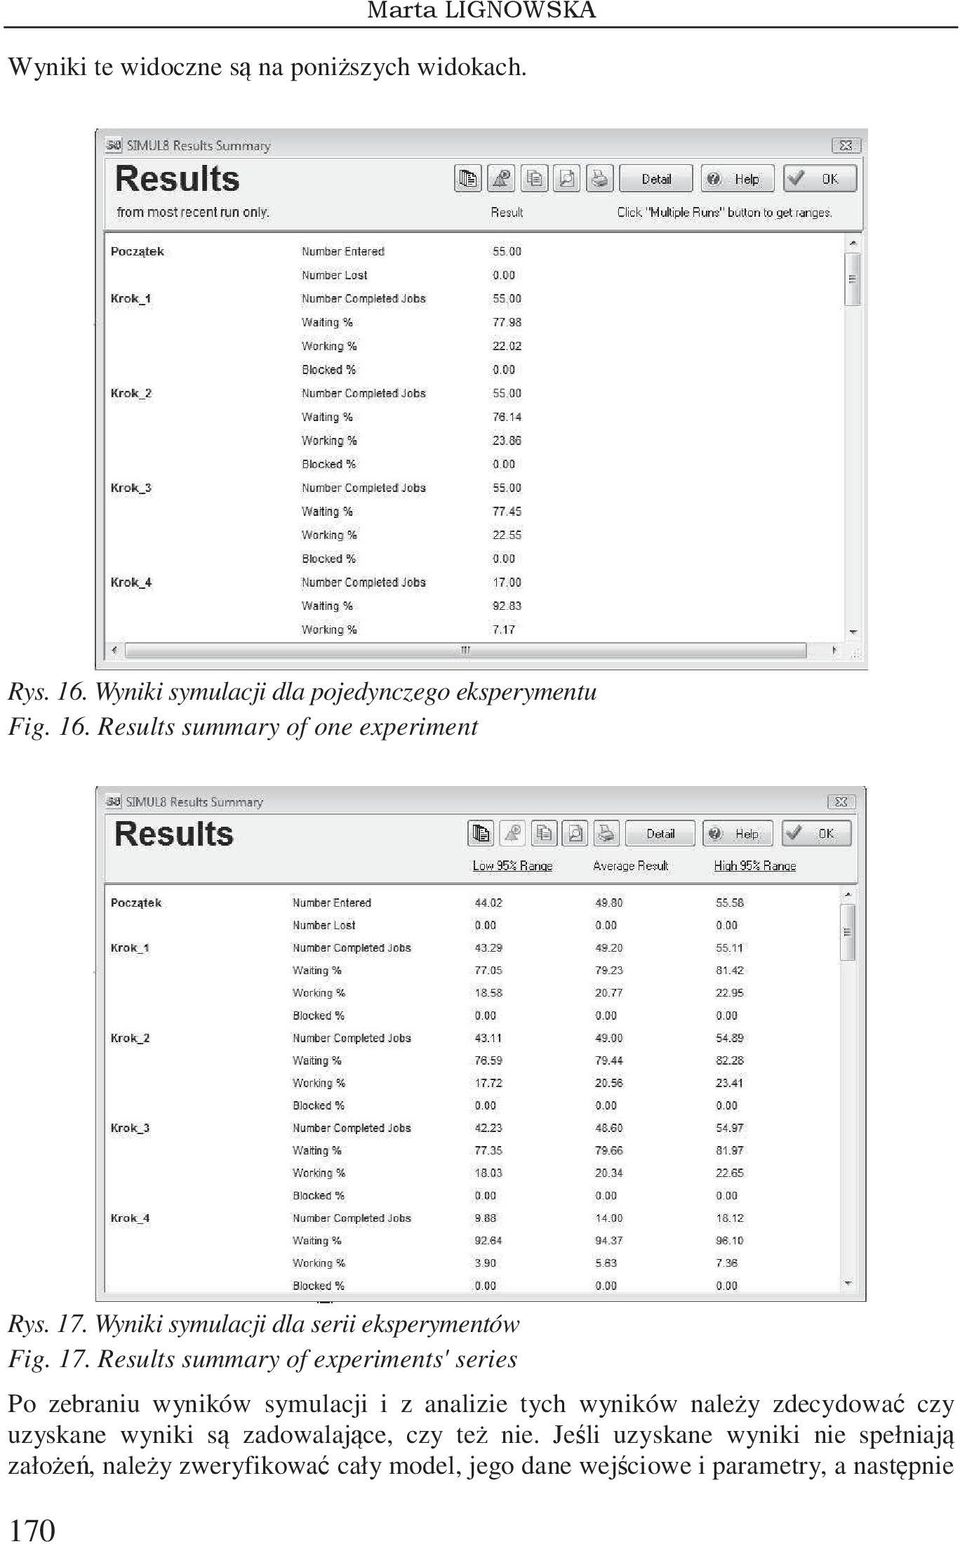 Results summary of experiments' series Po zebraniu wyników symulacji i z analizie tych wyników naley zdecydowa czy